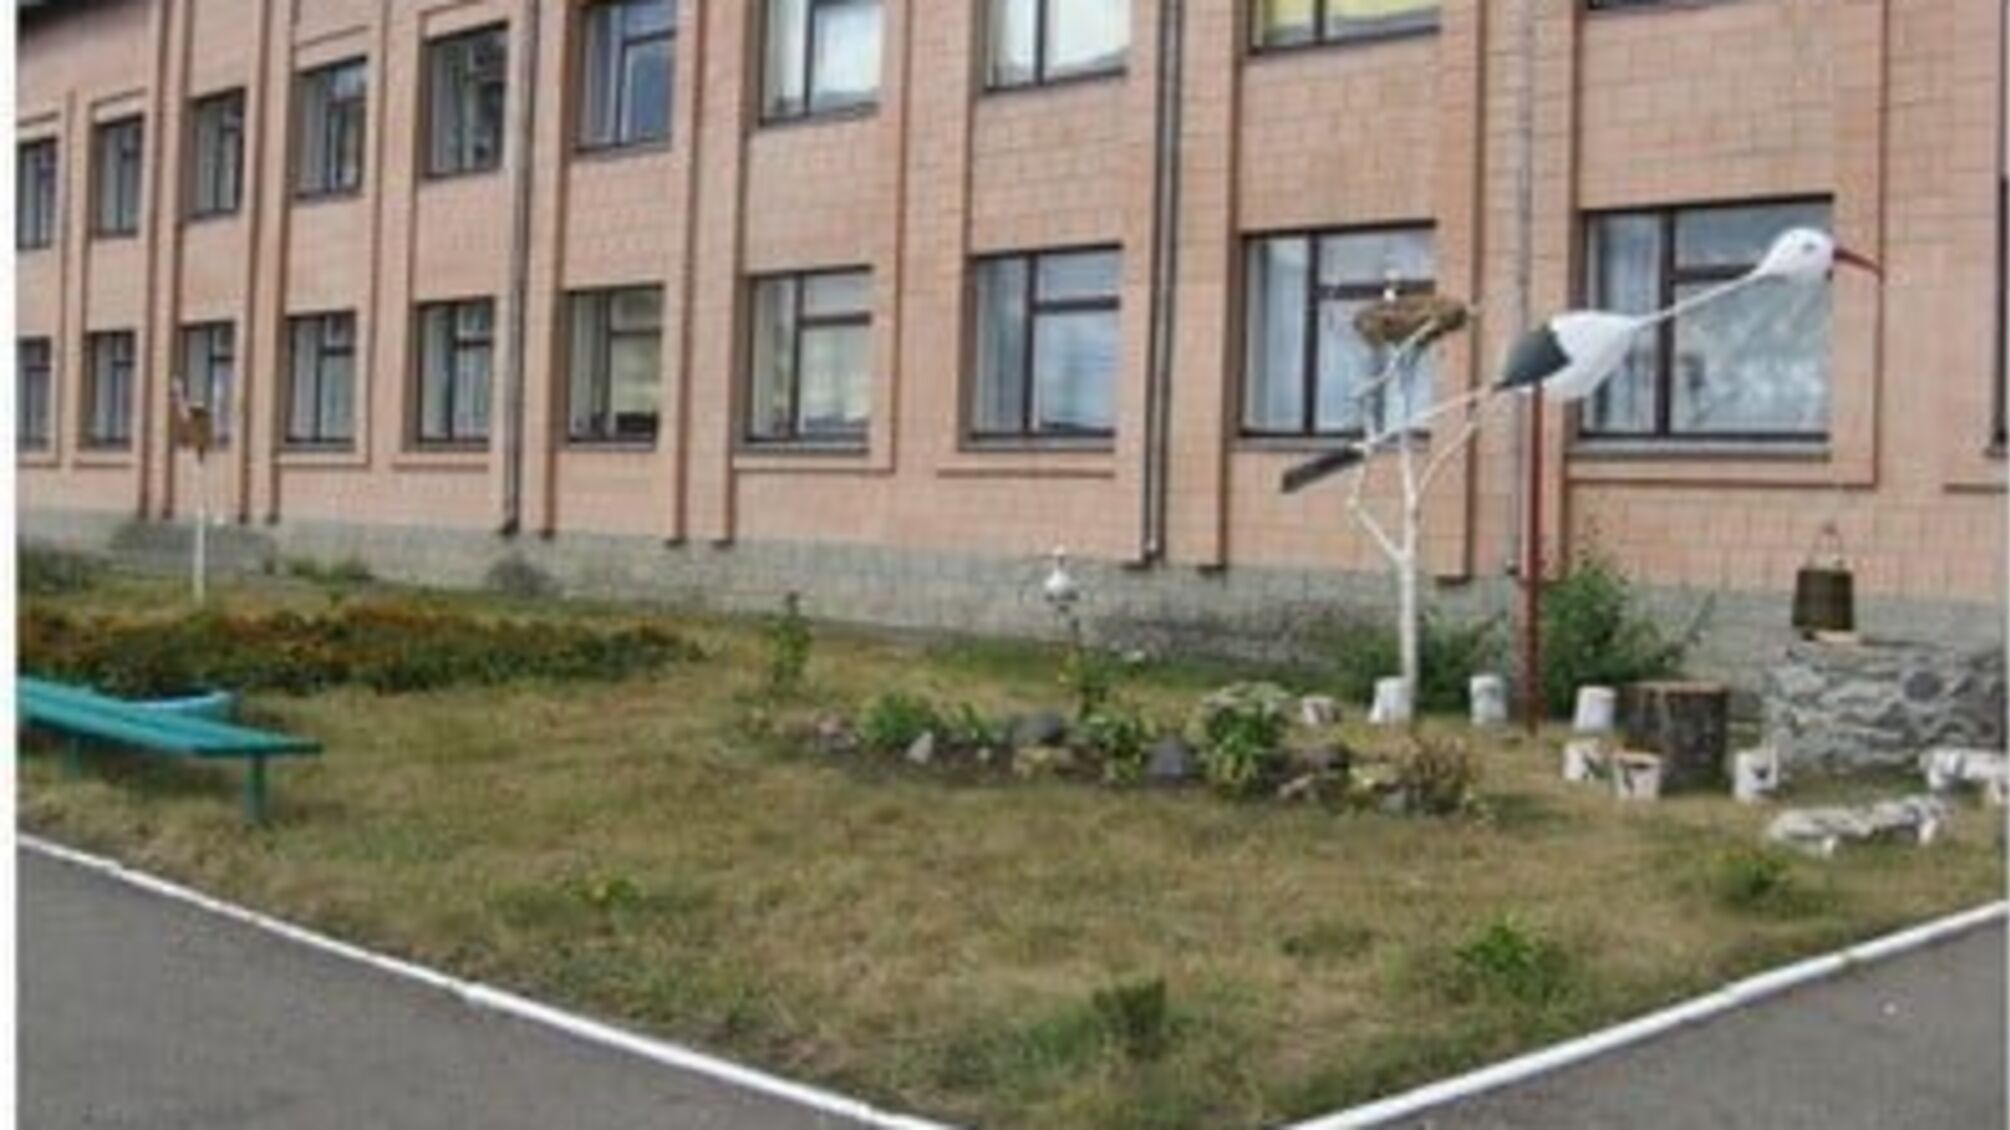 На Черкащині чиновники тримають у таємниці кошториси шкіл